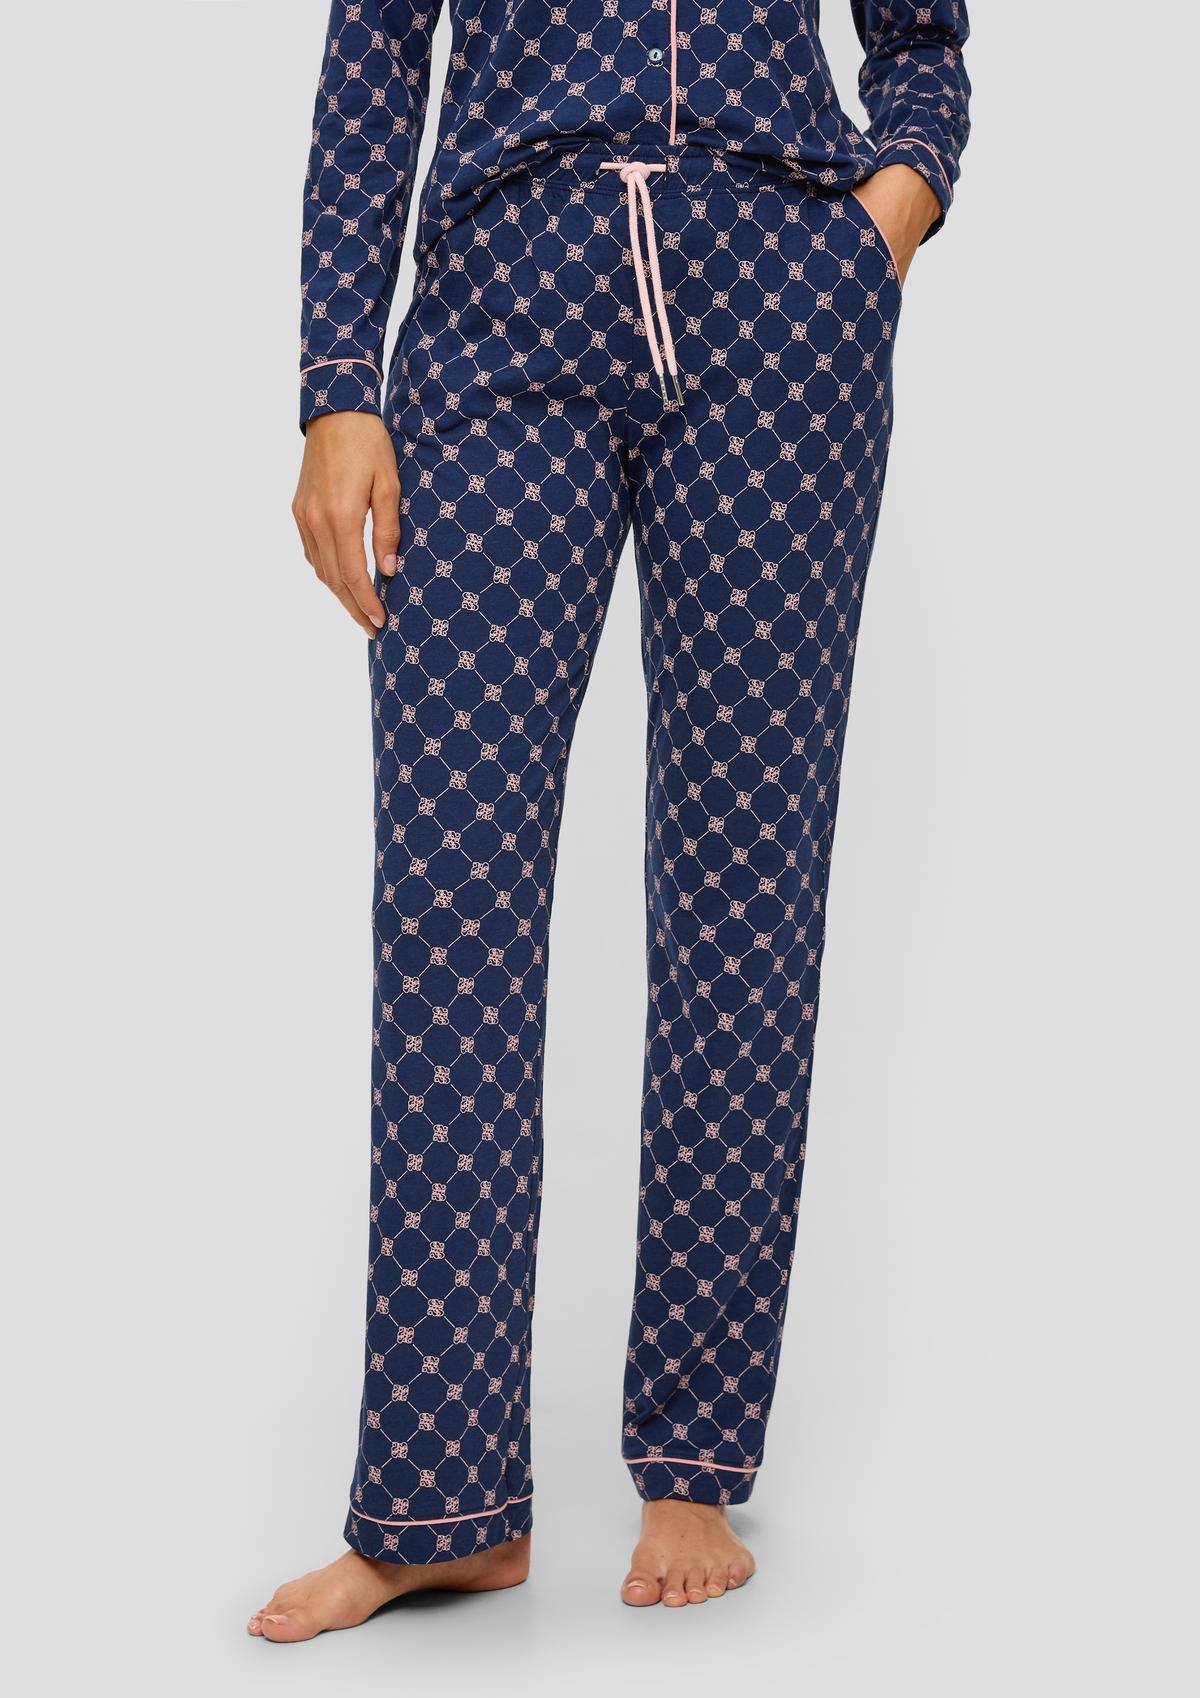 s.Oliver Langes Pyjama-Set mit Schlafmaske